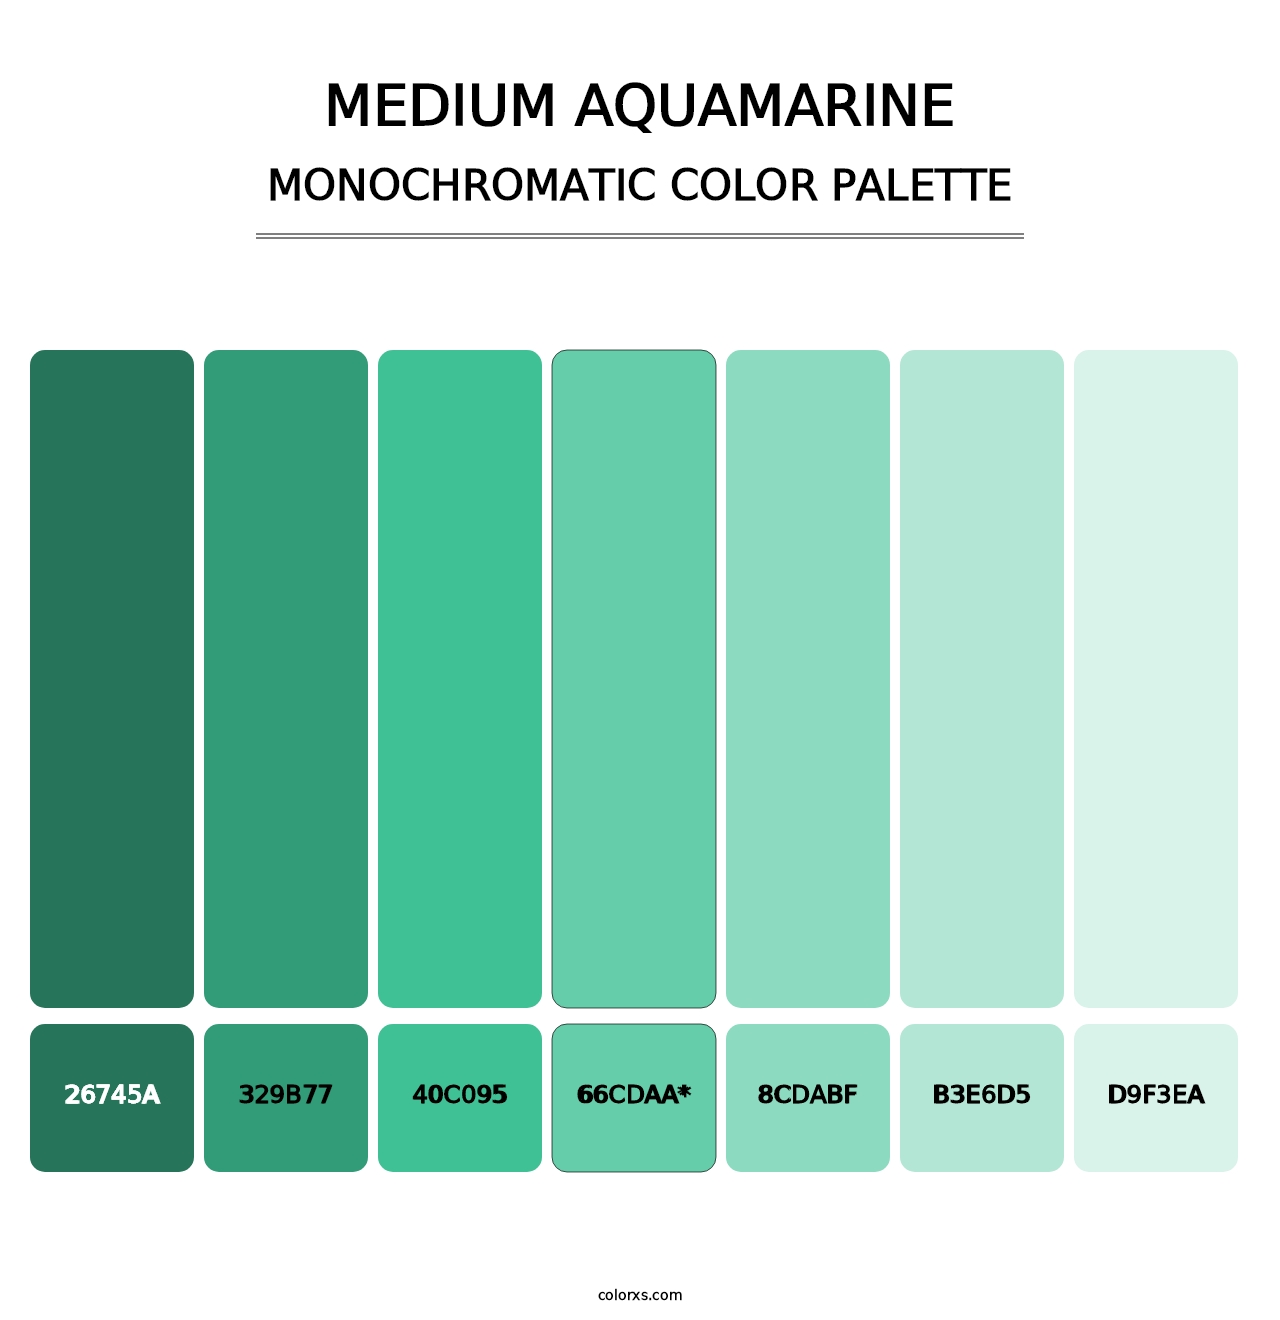 Medium Aquamarine - Monochromatic Color Palette